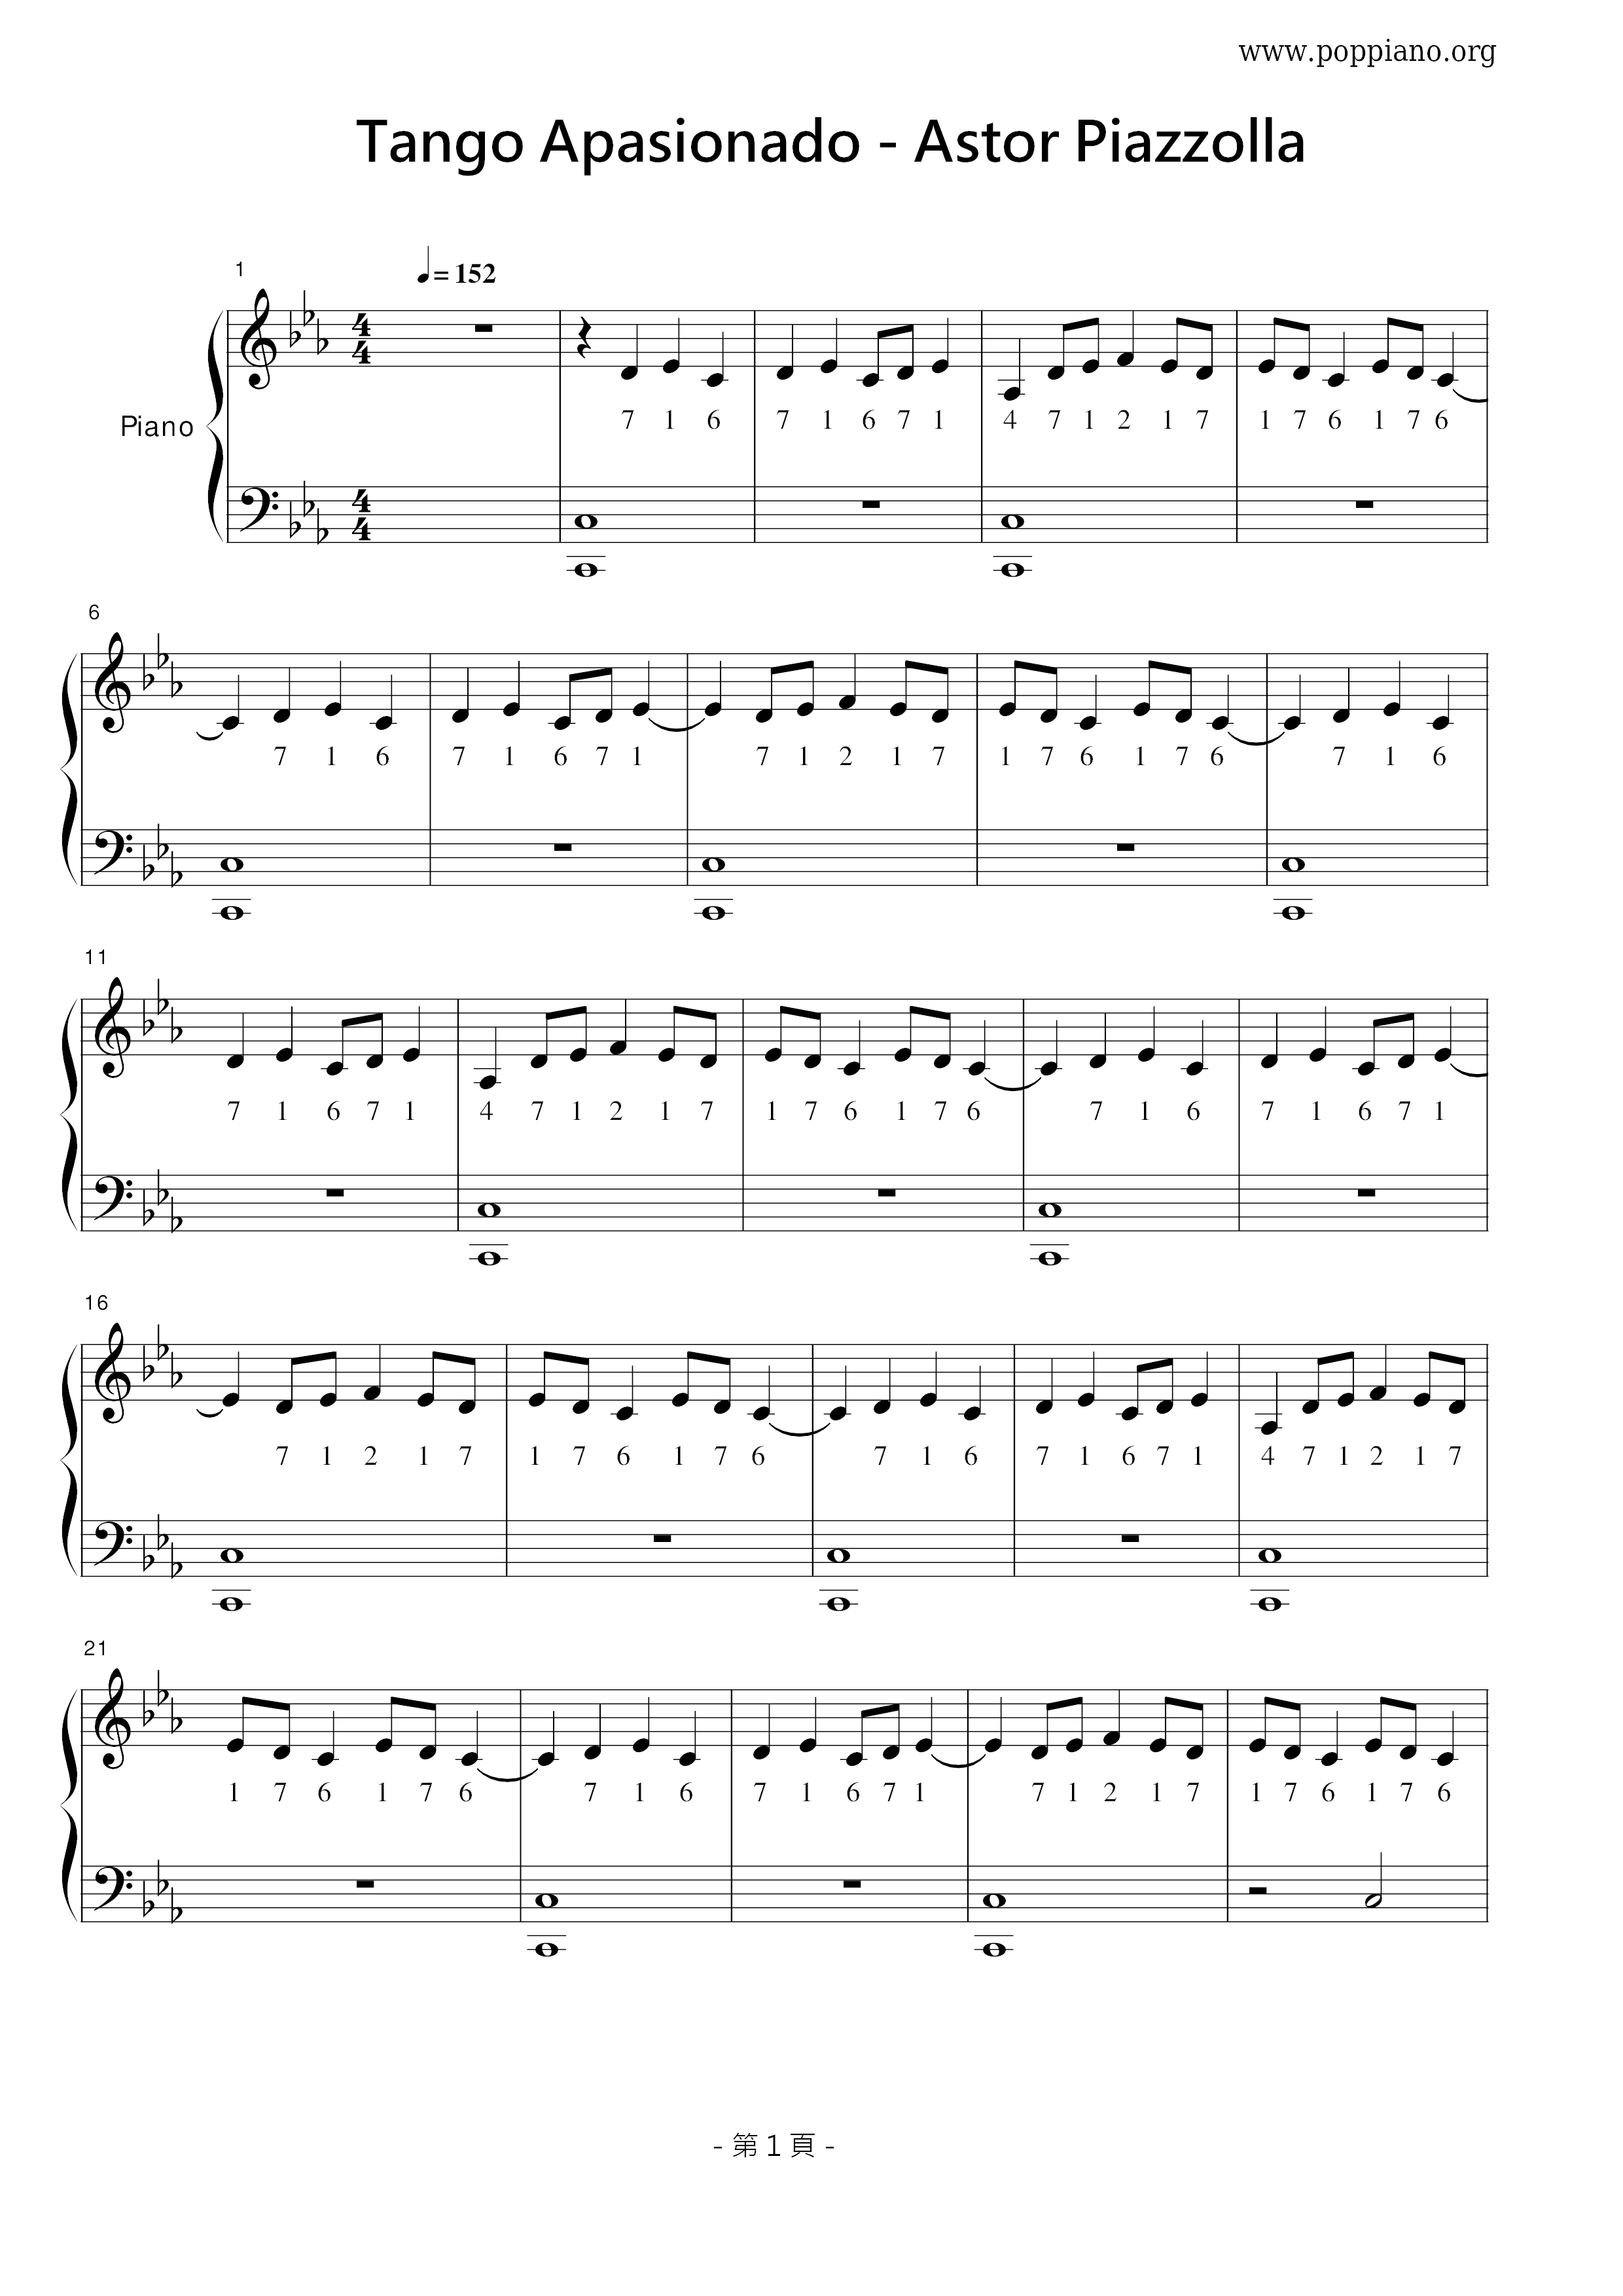 Tango Apasionado Score